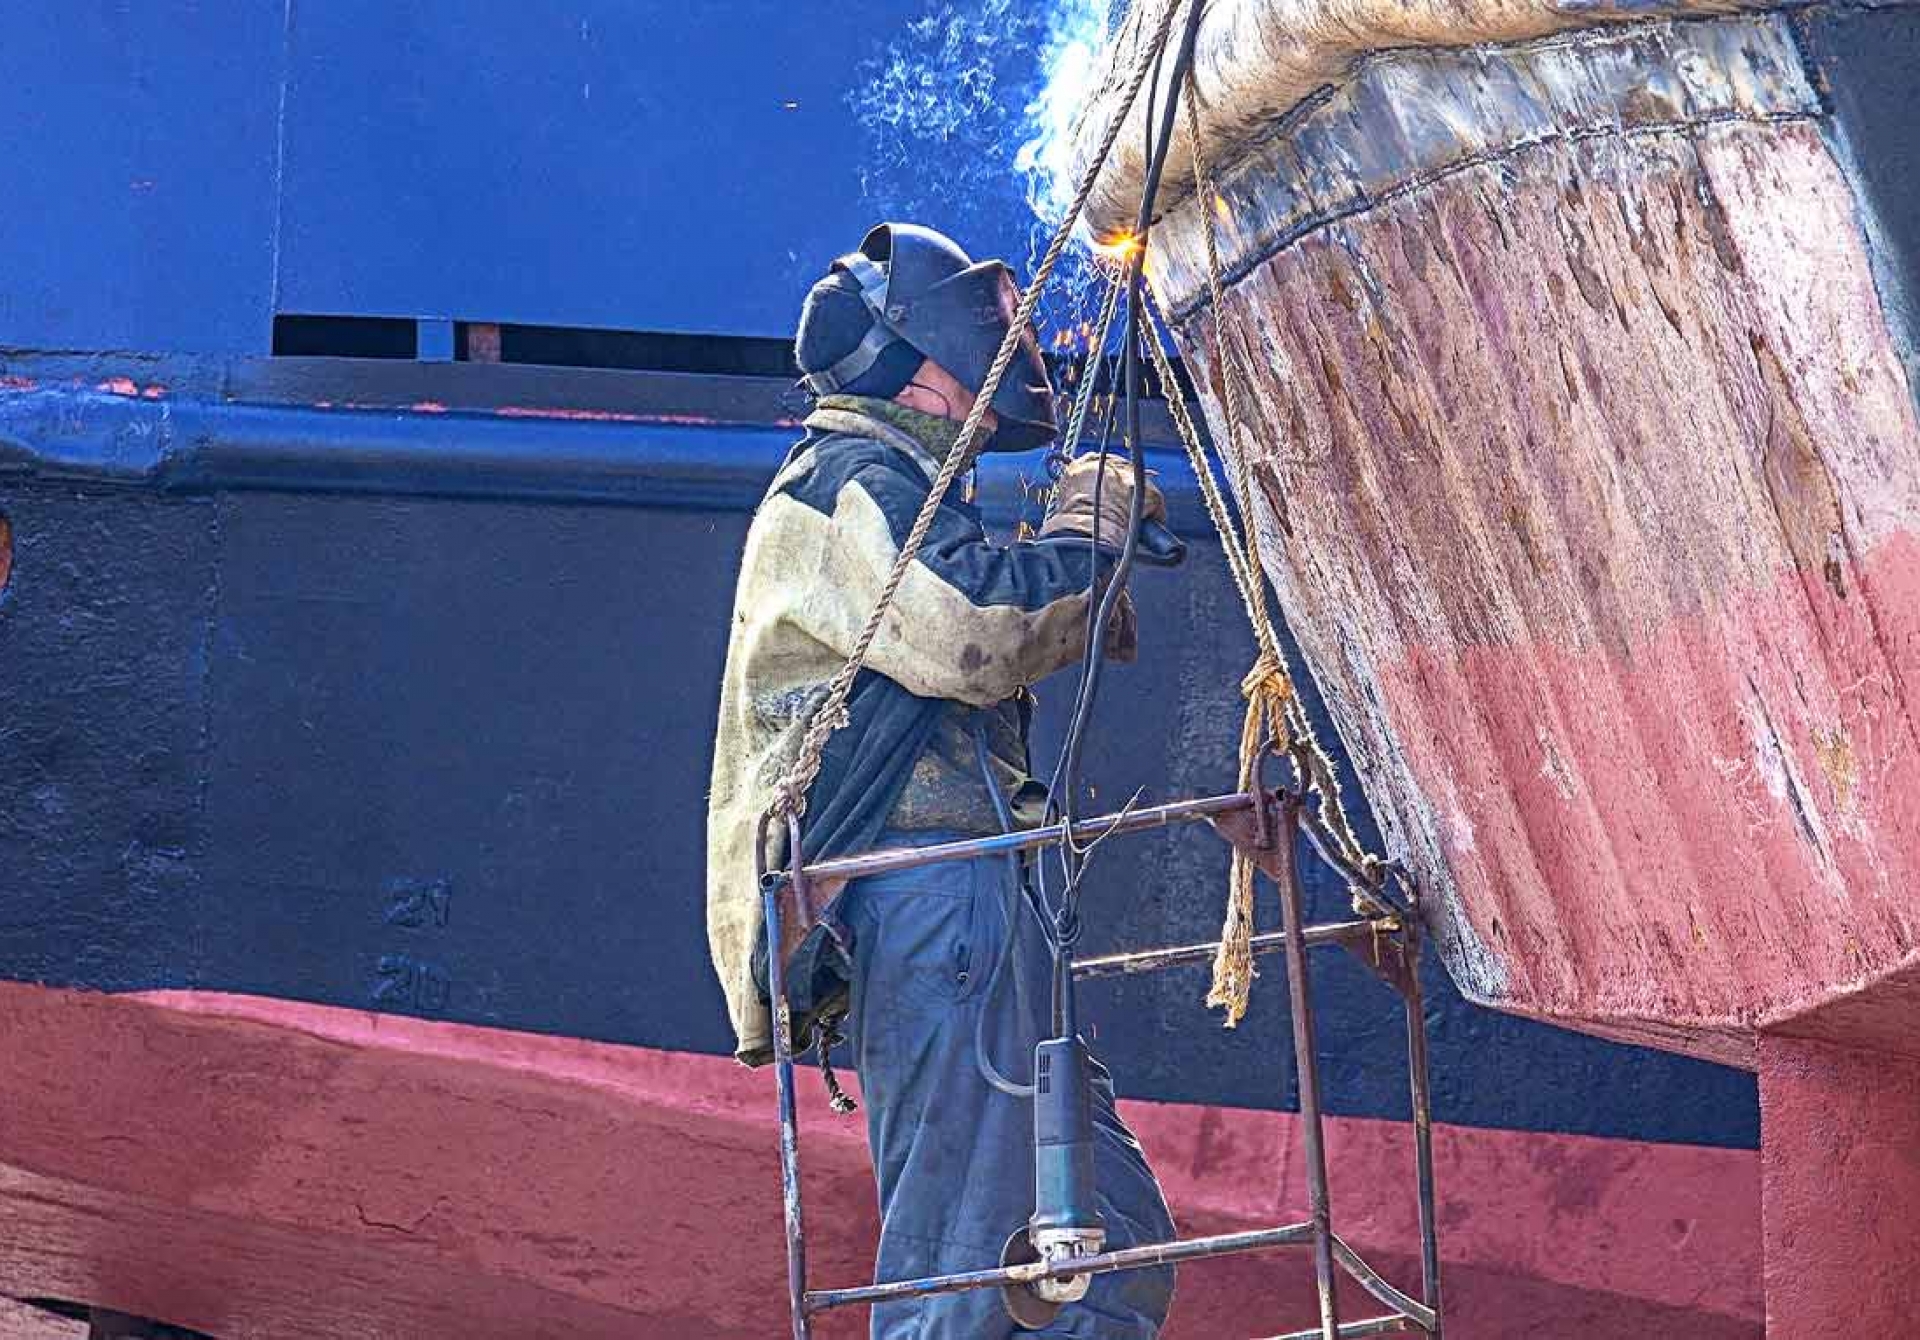 Servicio de Reparación de Barcos en Tarragona: Expertos en Soluciones y Mantenimiento de Embarcaciones